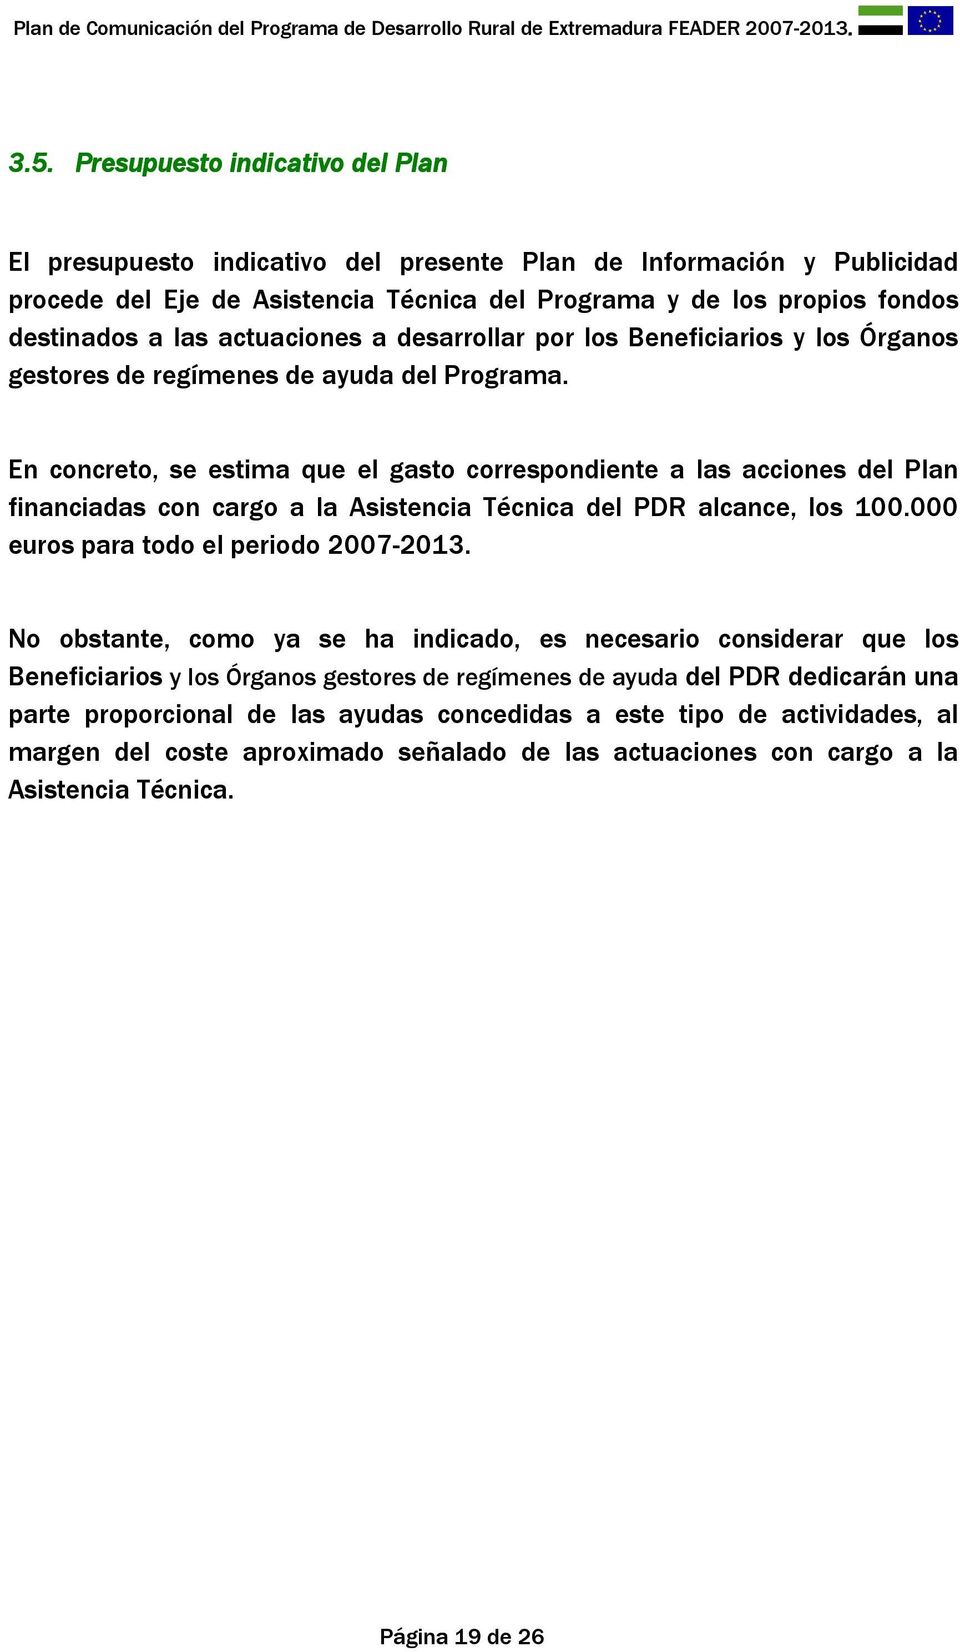 En concreto, se estima que el gasto correspondiente a las acciones del Plan financiadas con cargo a la Asistencia Técnica del PDR alcance, los 100.000 euros para todo el periodo 2007-2013.